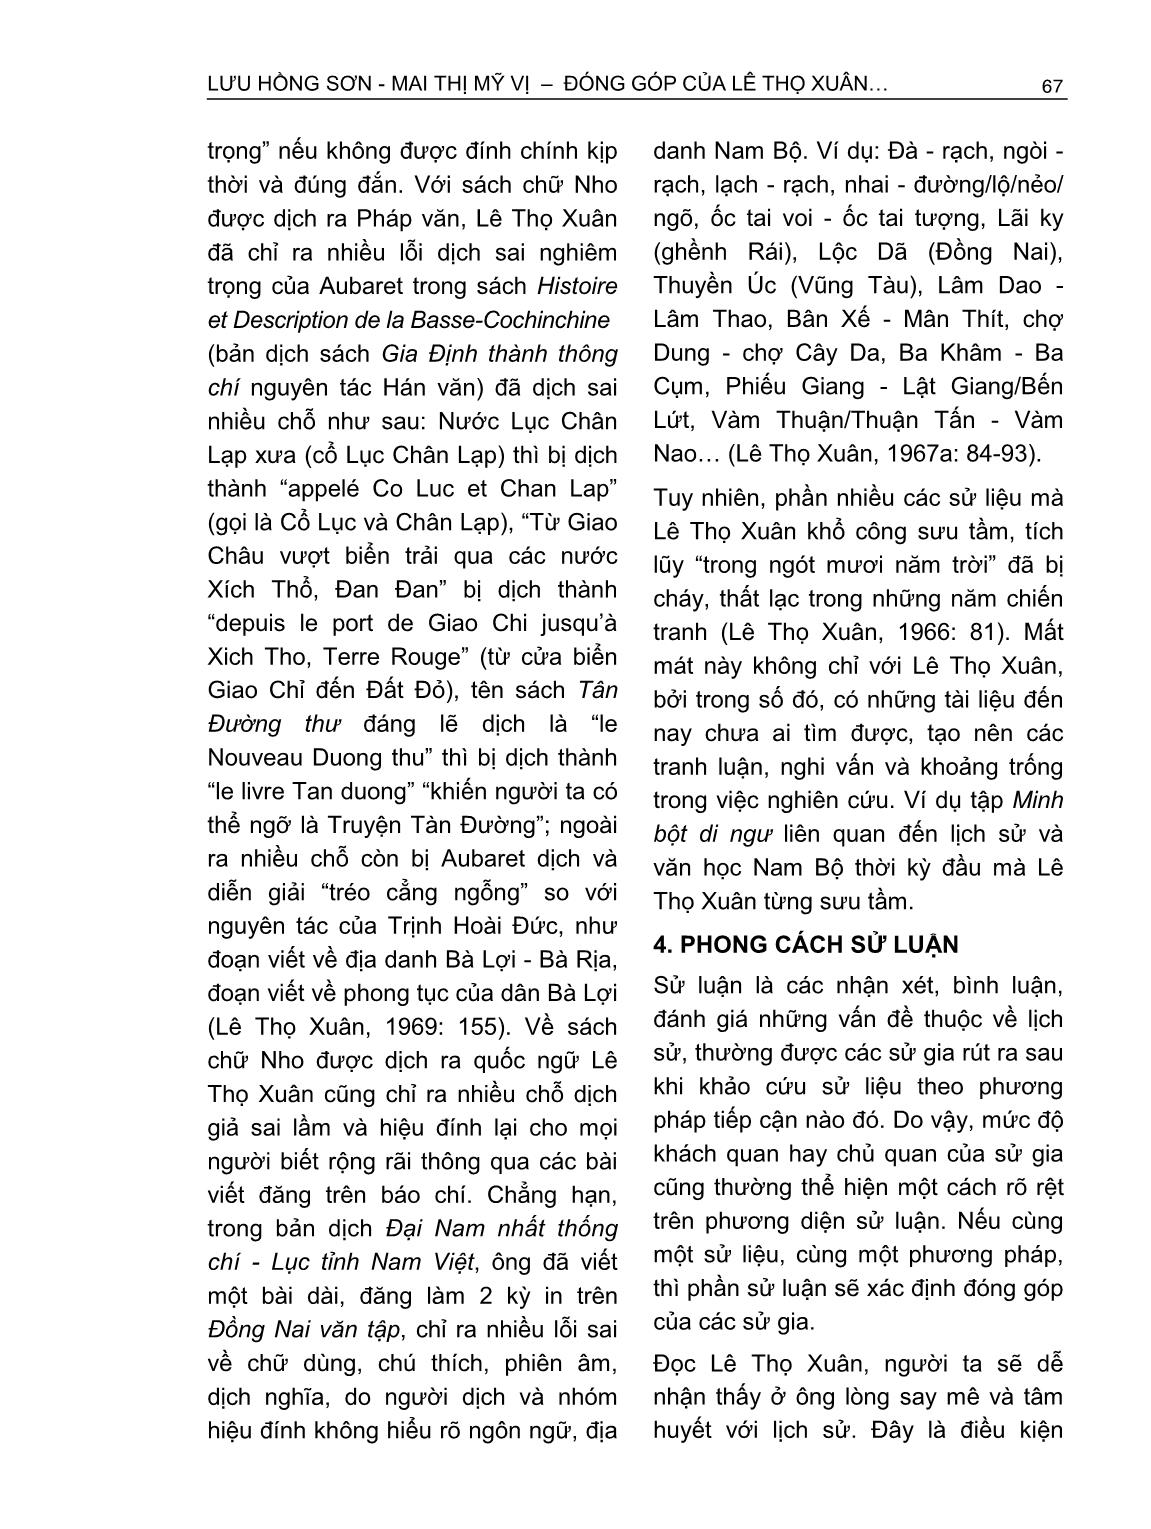 Đóng góp của Lê Thọ Xuân trong nghiên cứu lịch sử Nam Bộ triều Nguyễn thế kỷ XIX trang 8